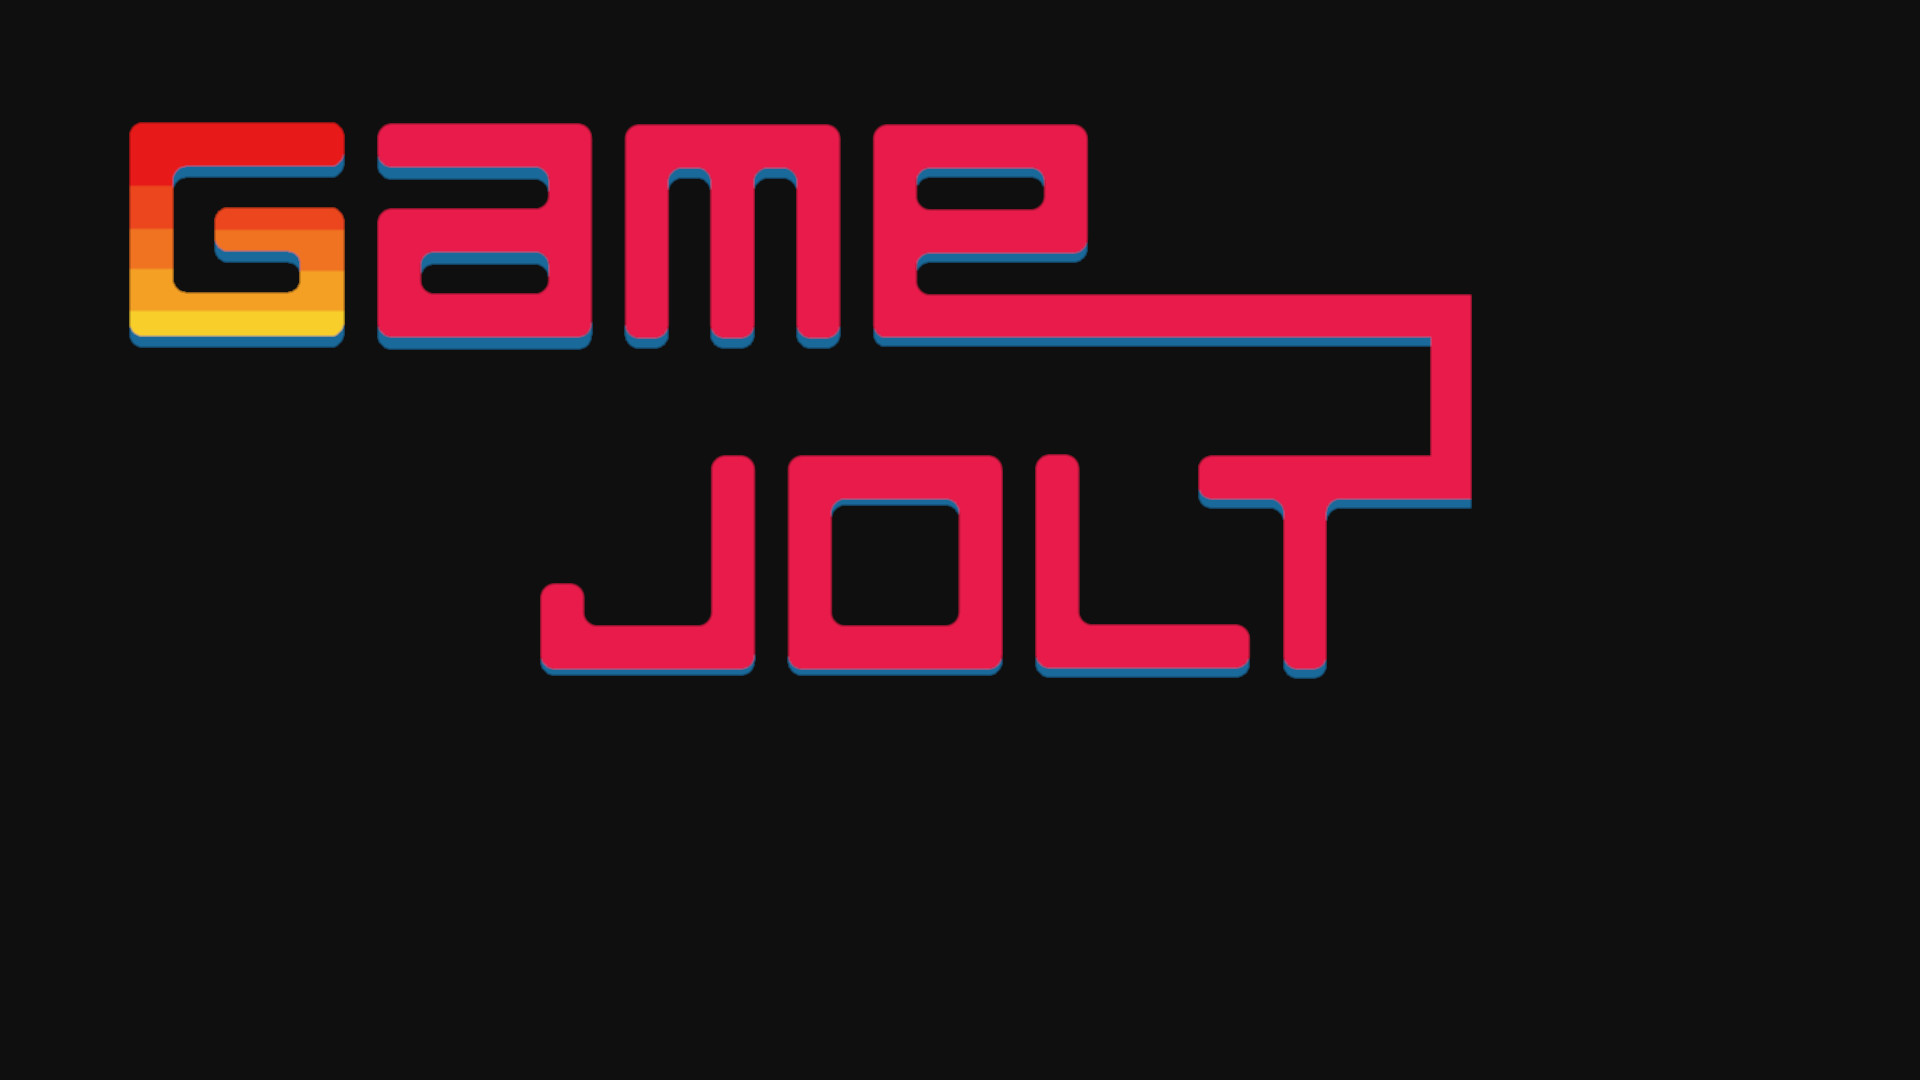 Game Jolt wallpaper